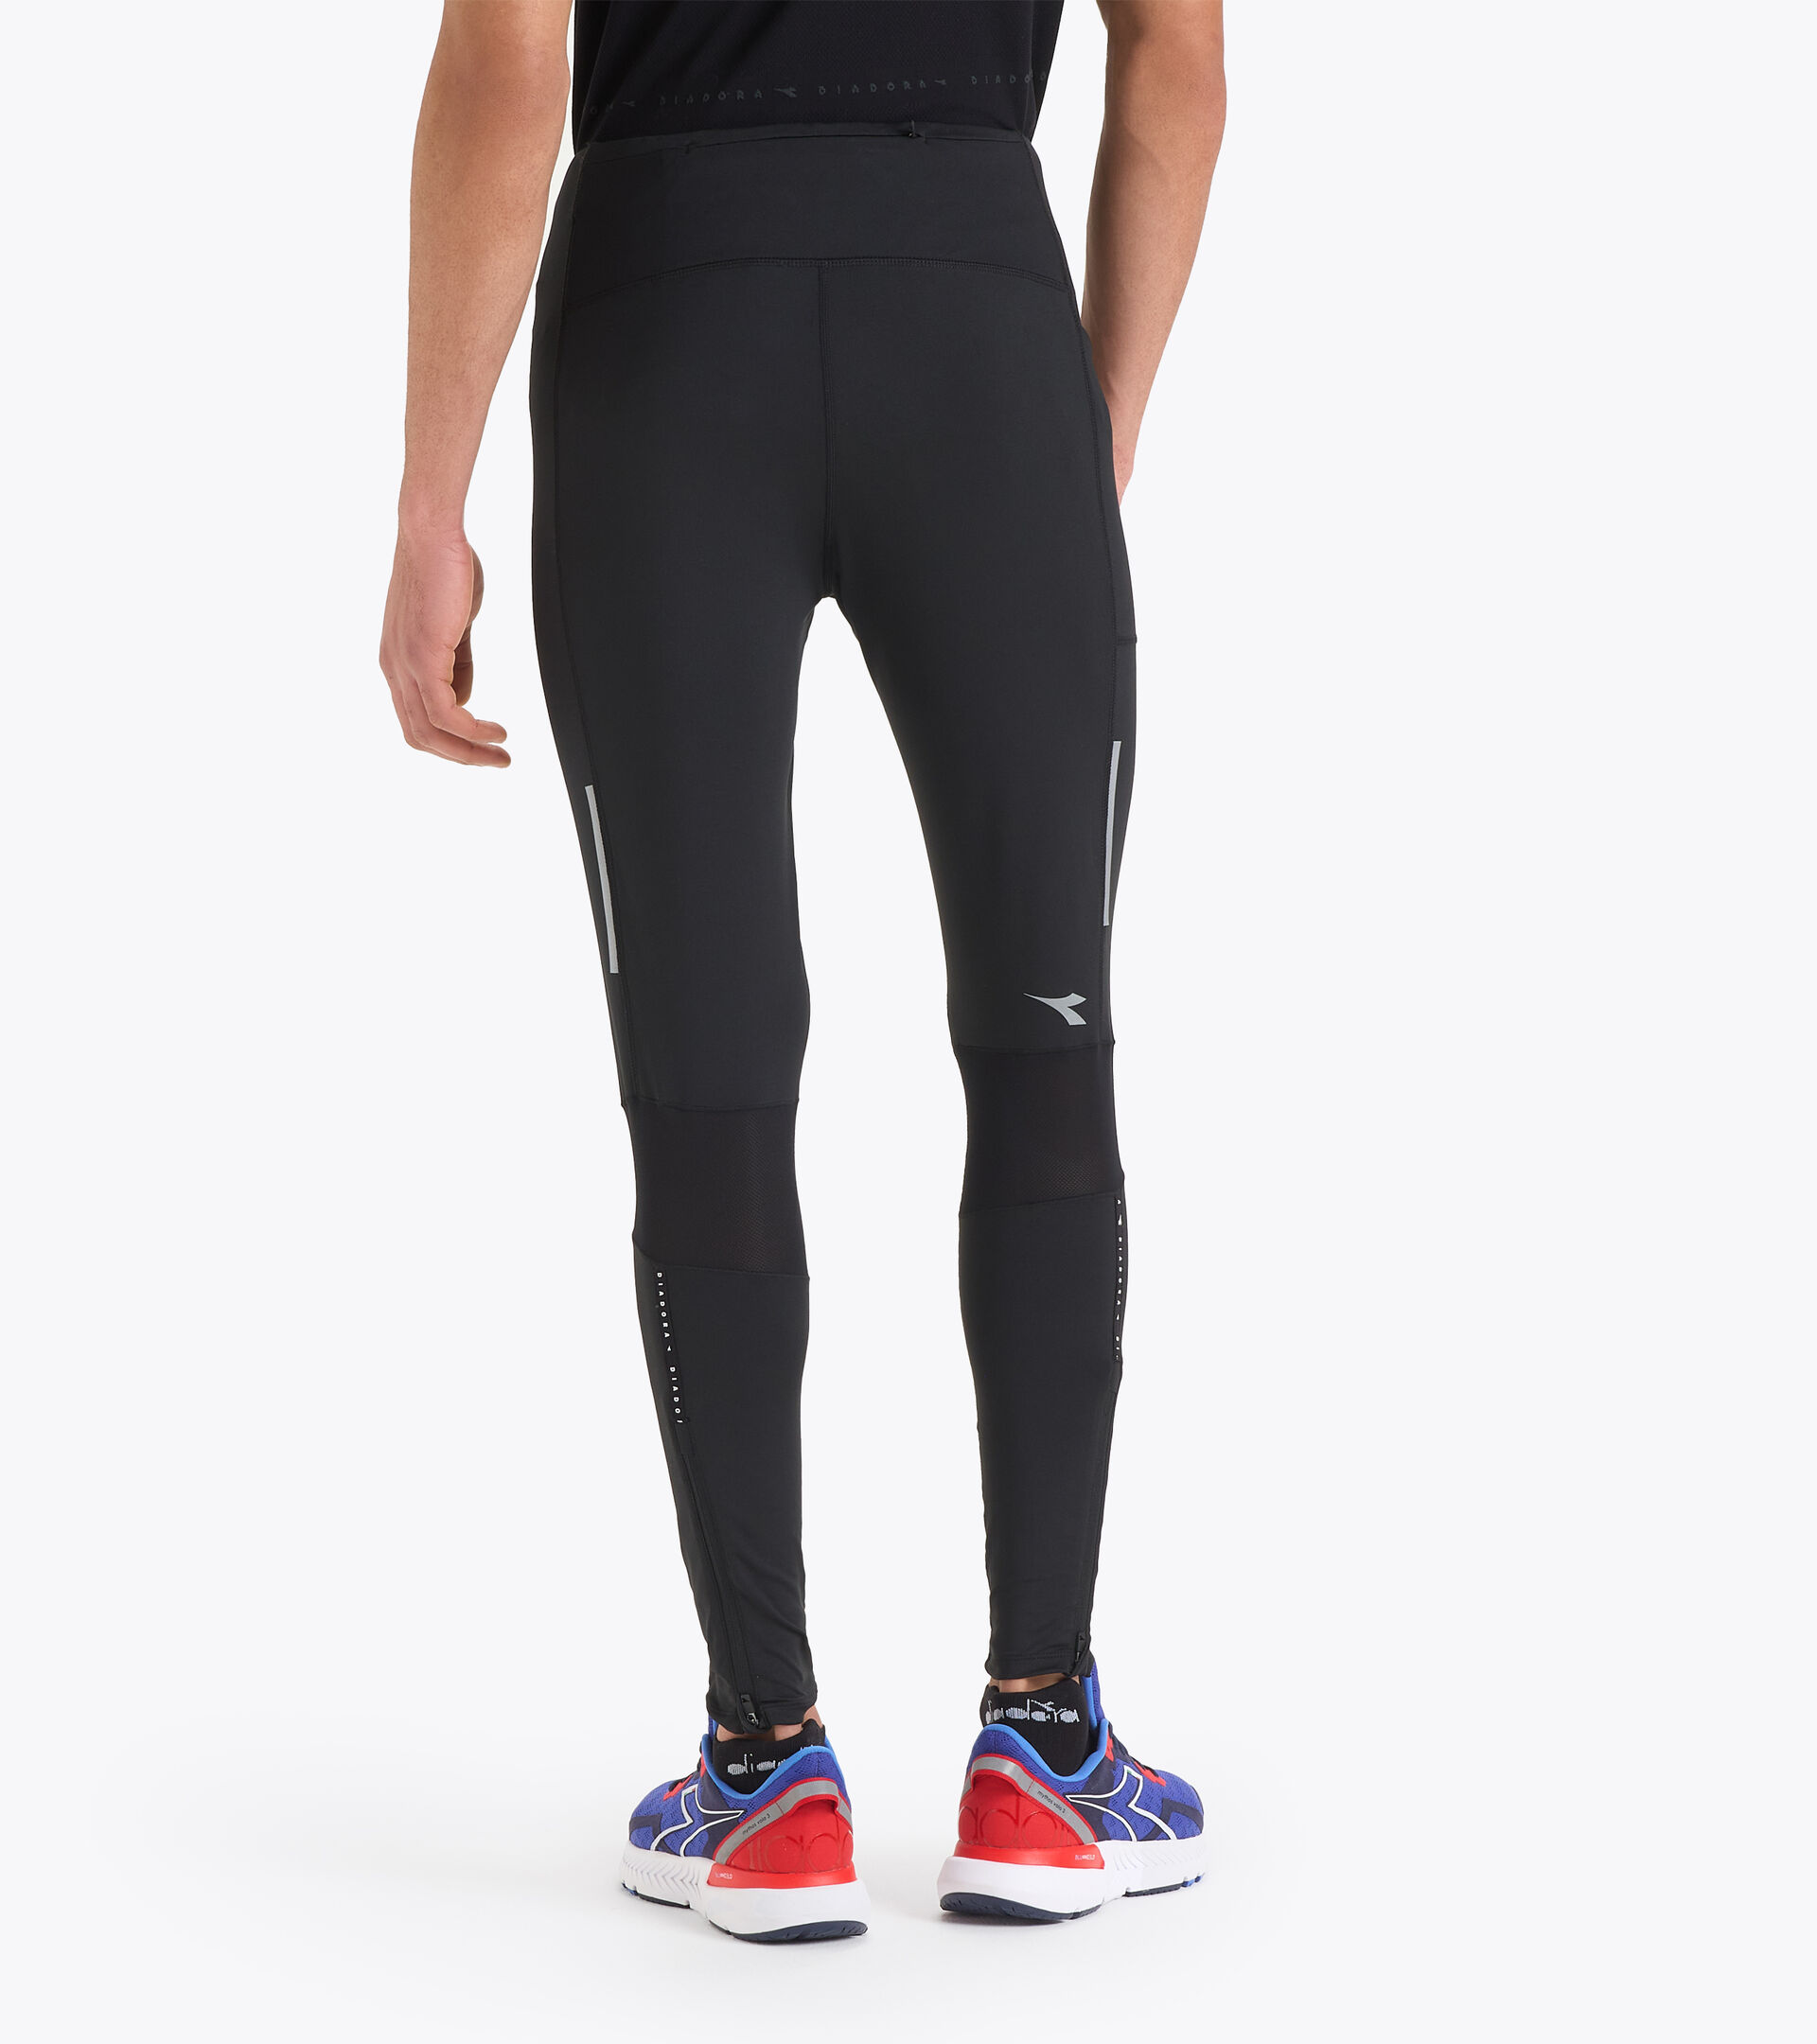 RUNNING TIGHTS Running leggings - - Online Store